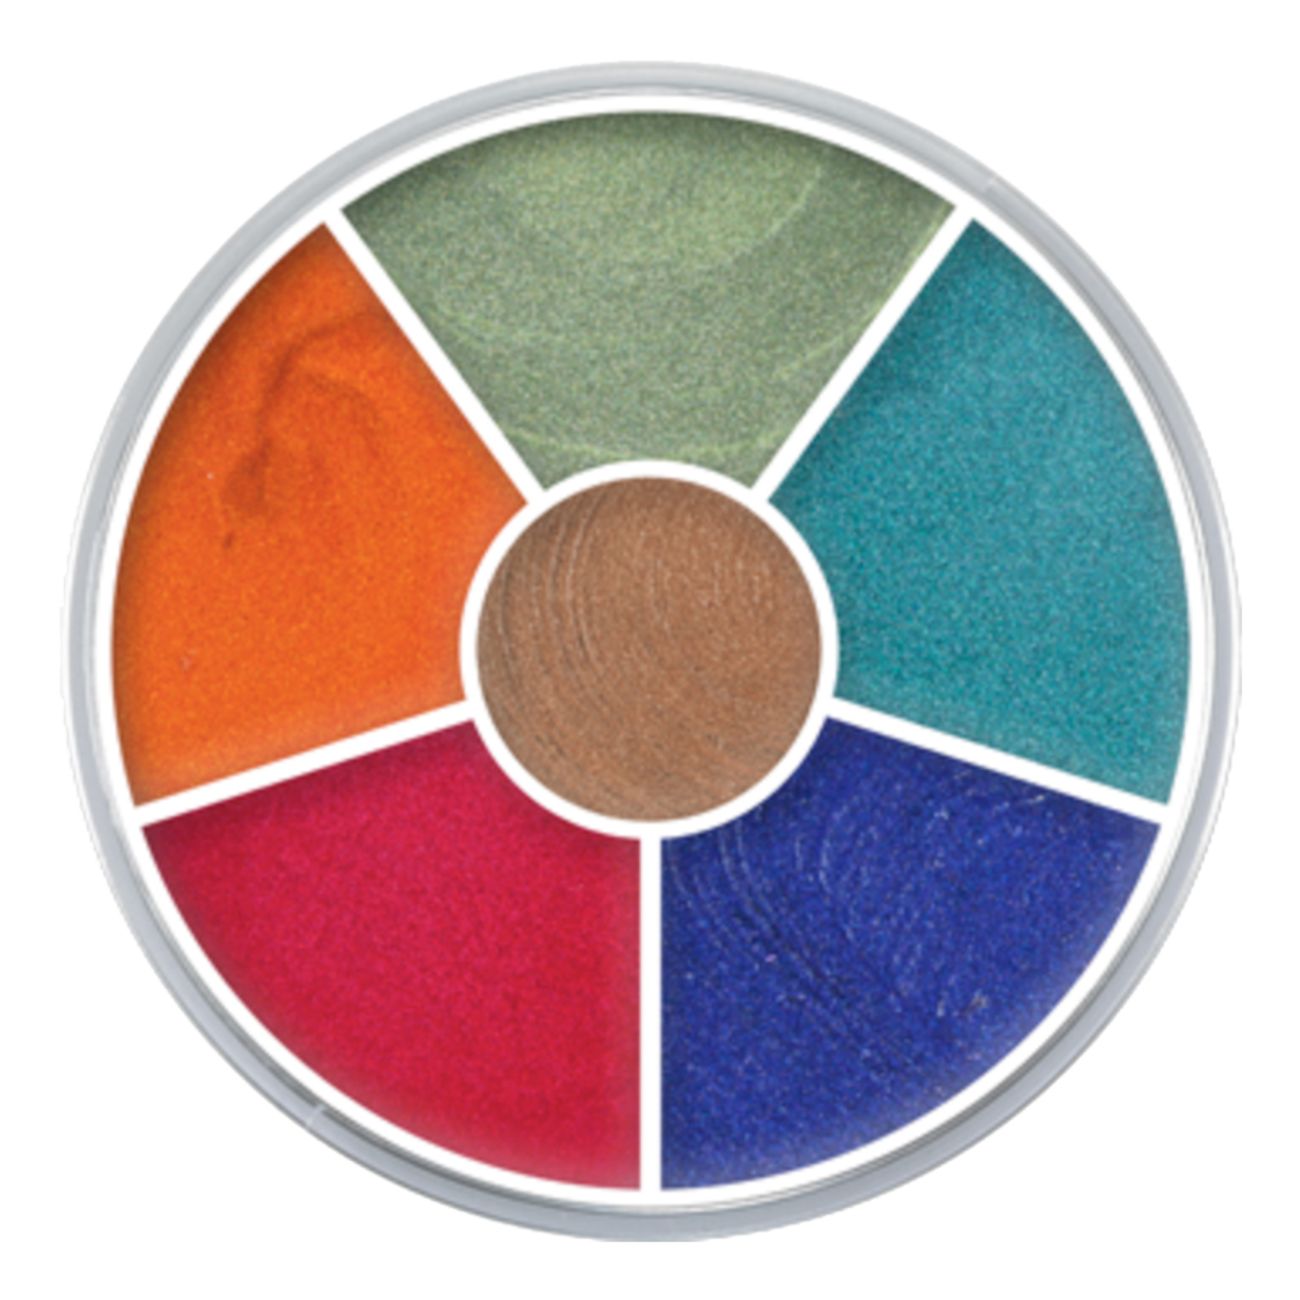 kryolan-supra-multicolor-palett-sense-1